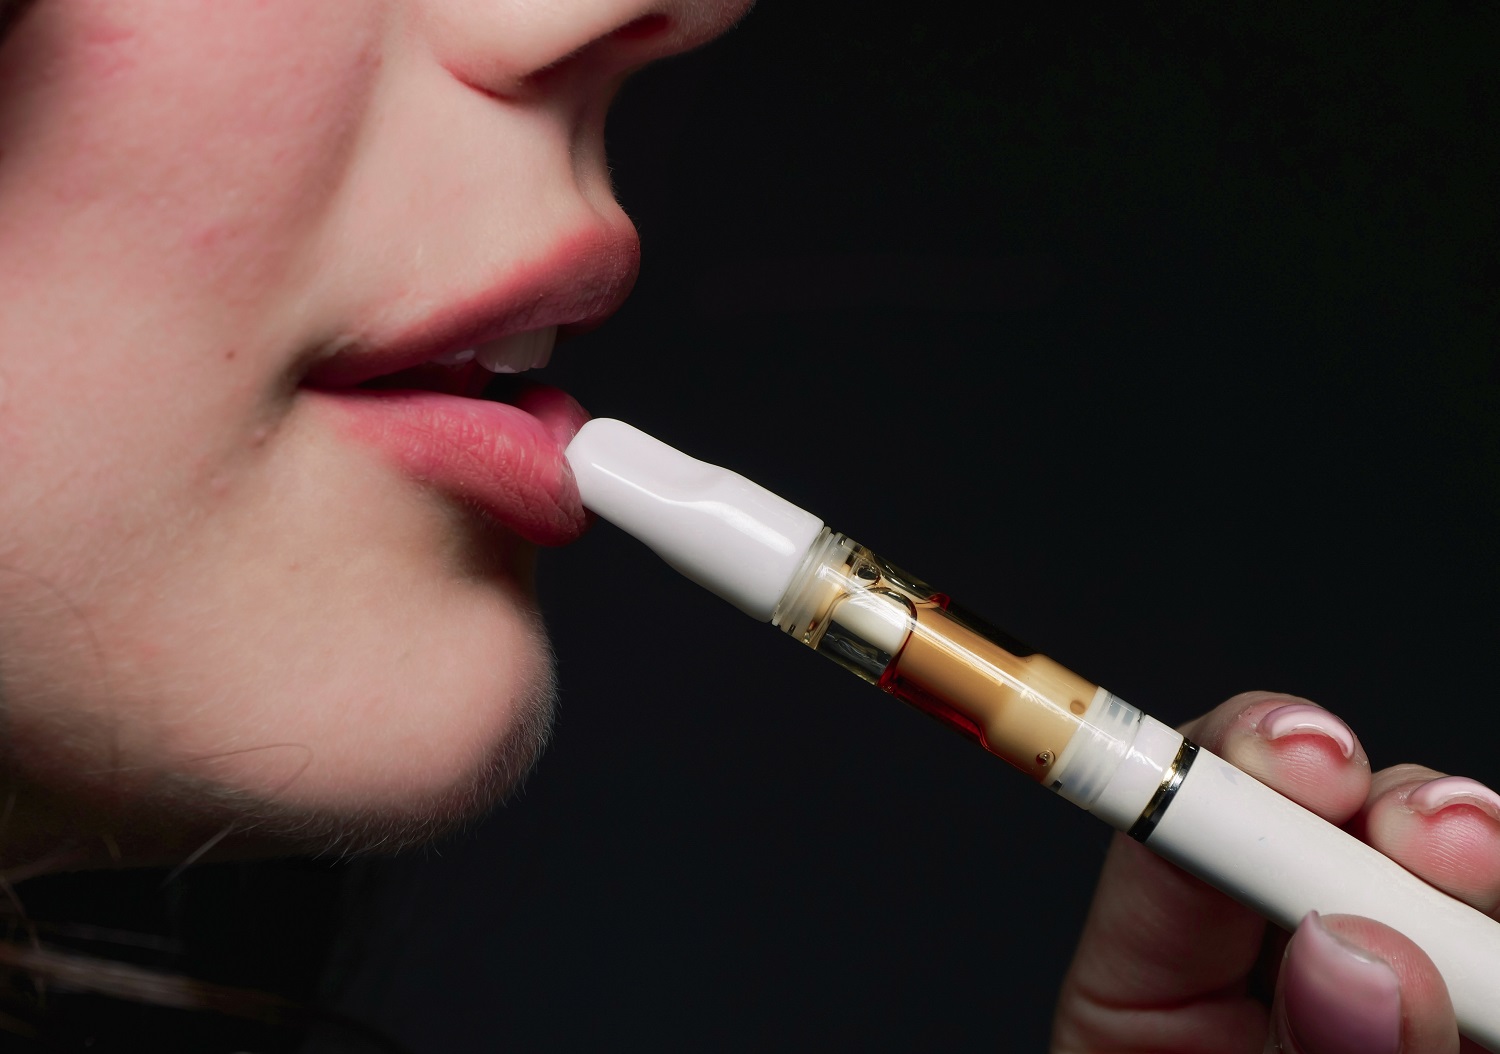 Parlamentarai siekia griežtinti baudas už neteisėtą prekybą elektroninėmis cigaretėmis